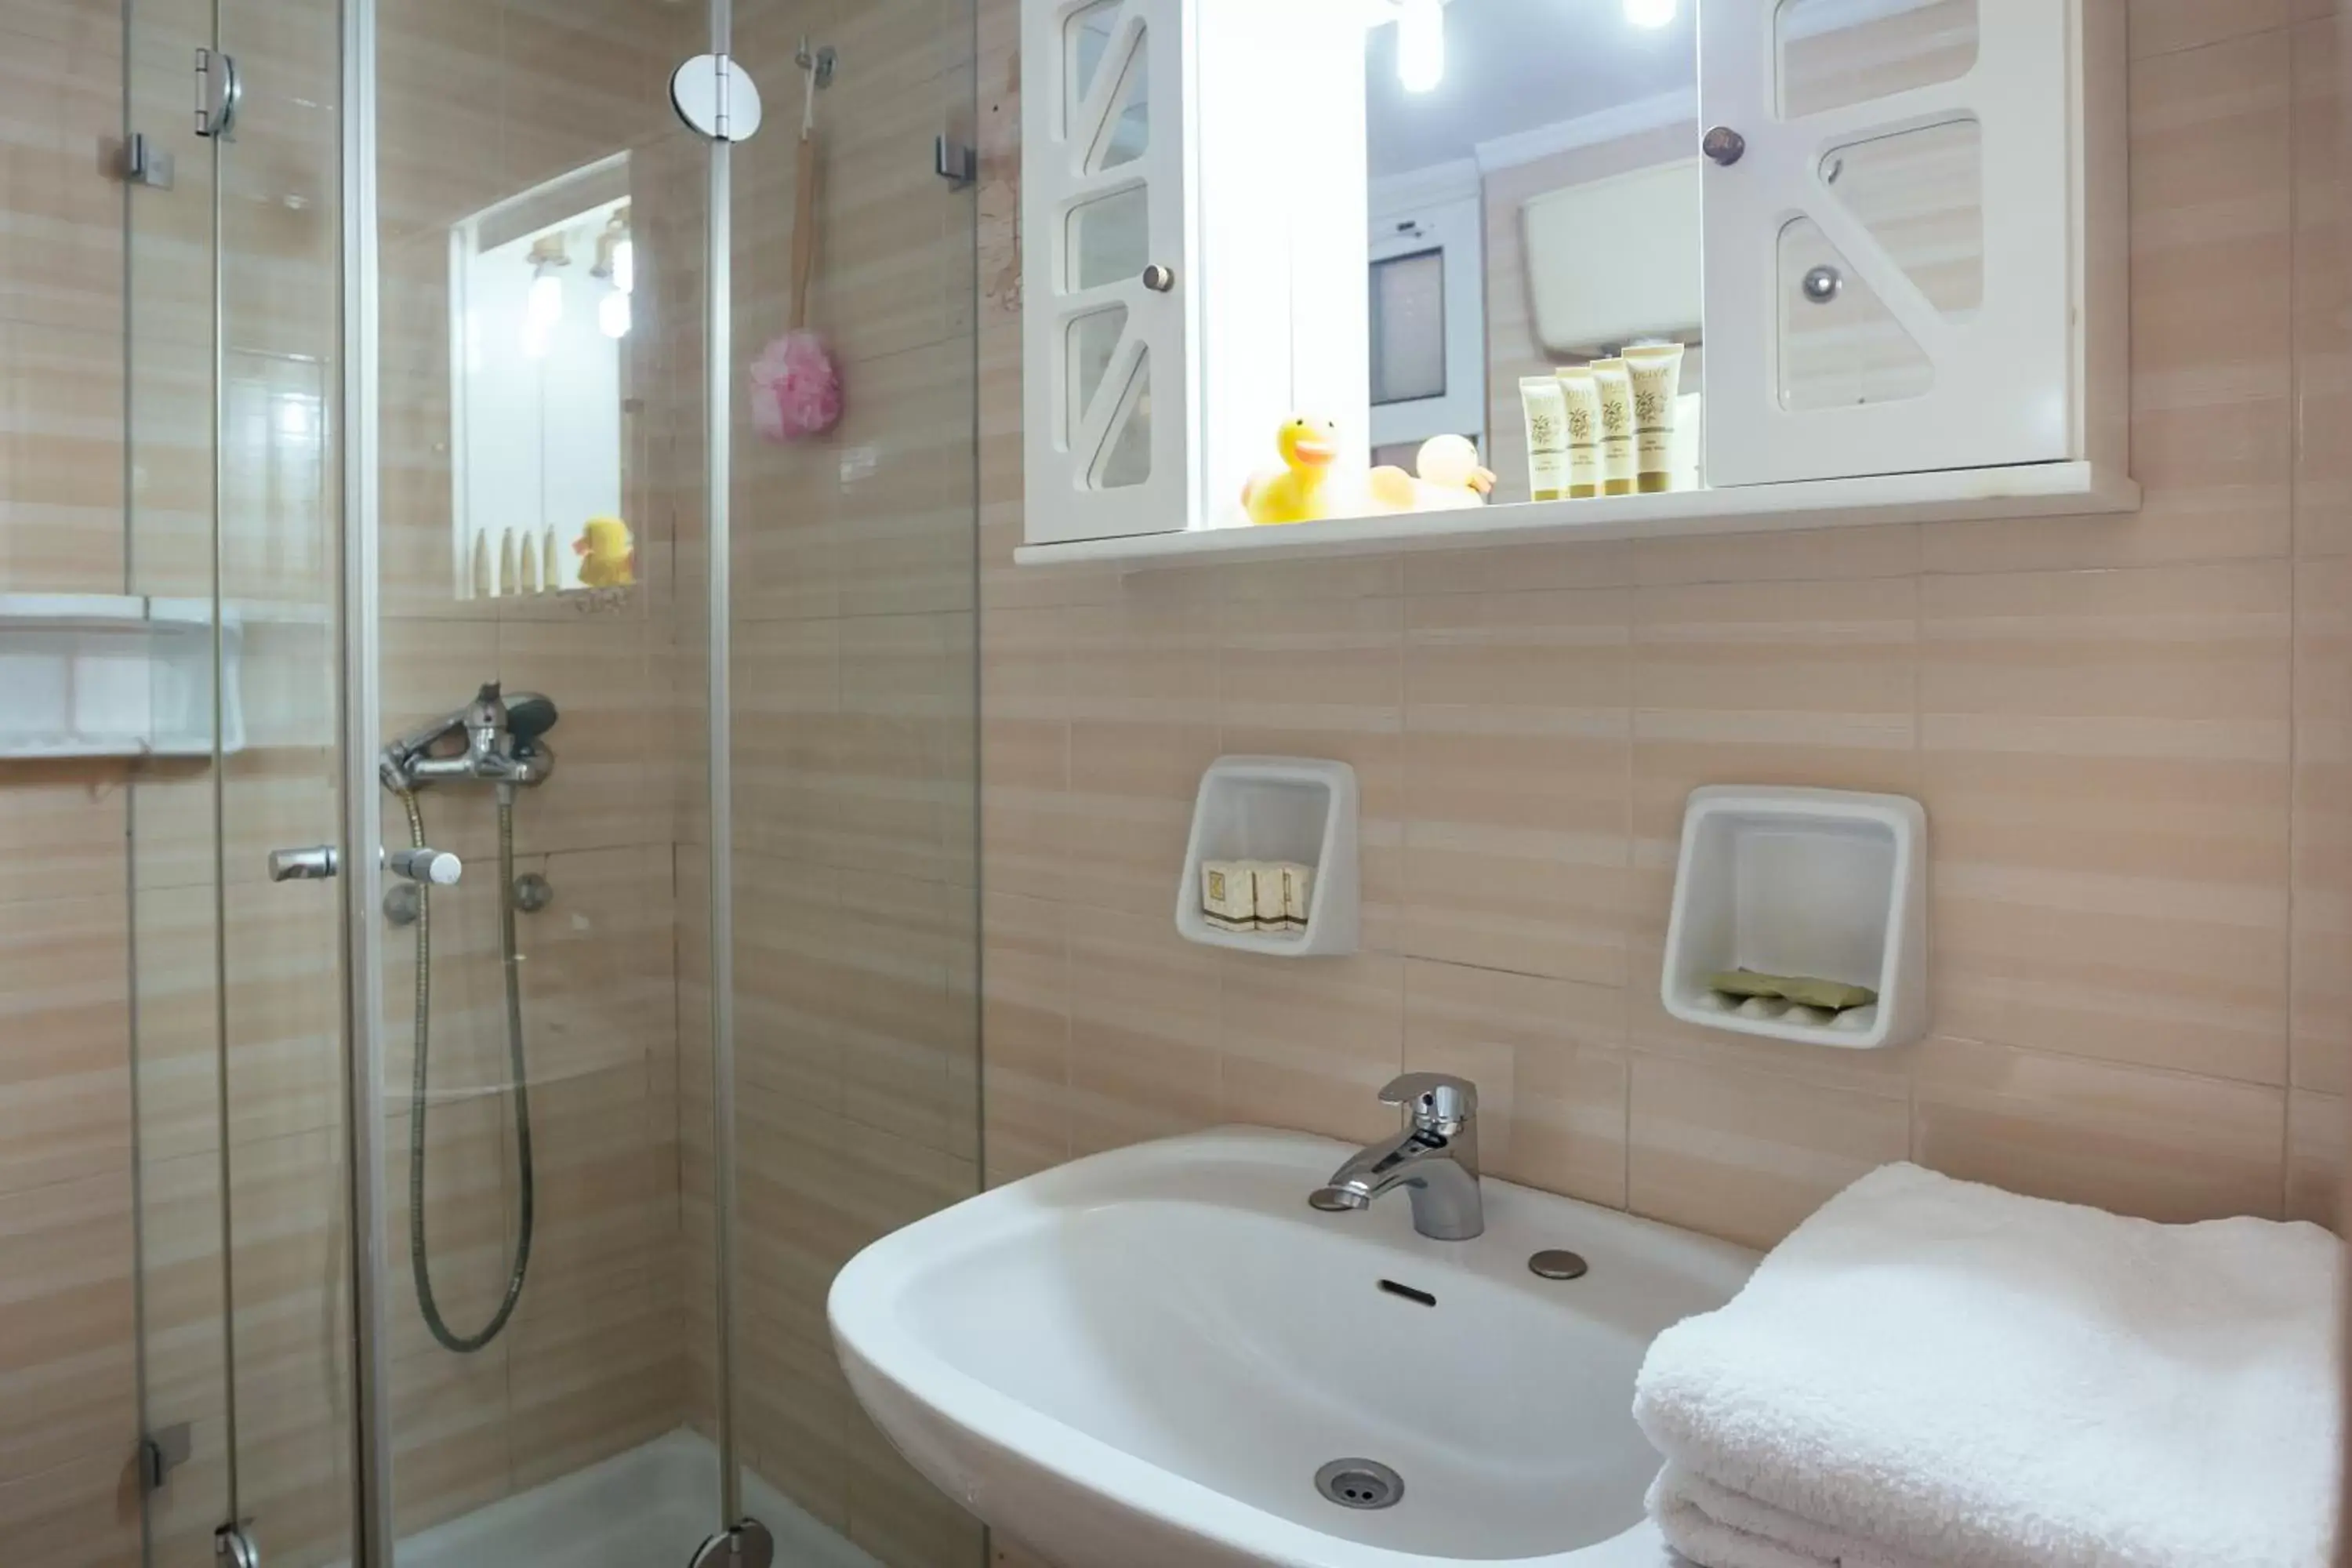 Shower, Bathroom in Ignatia Hotel